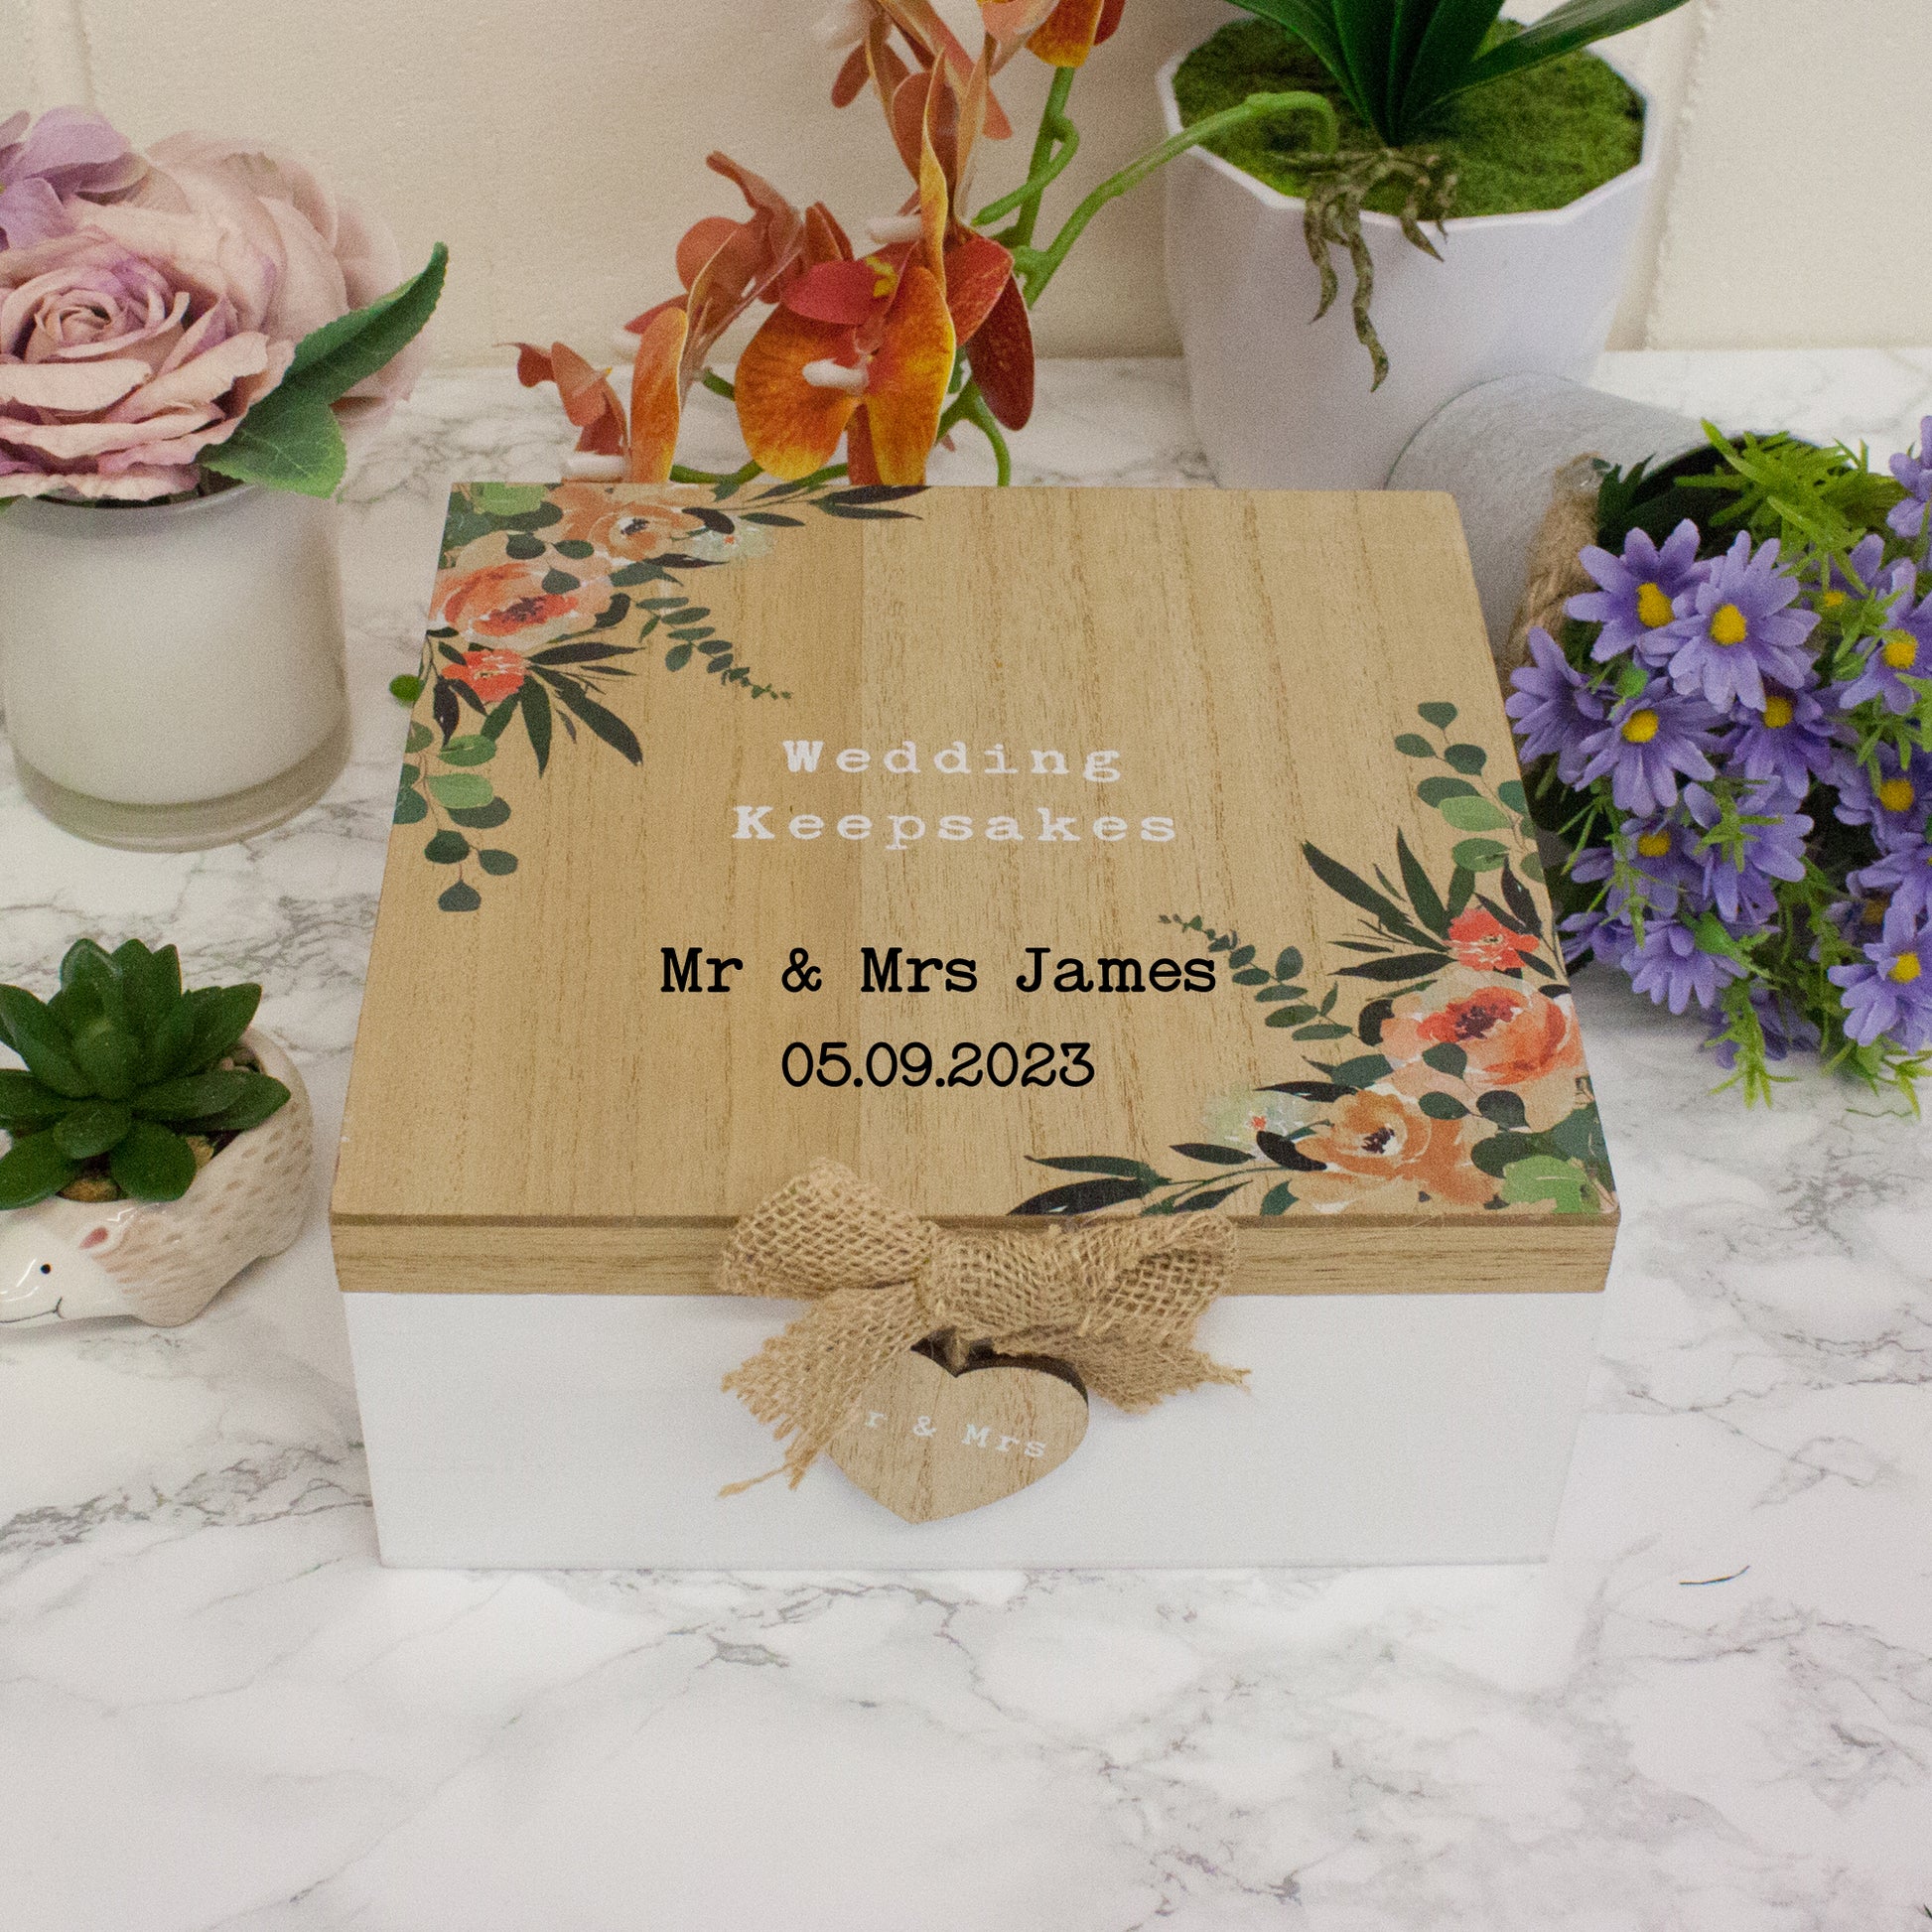 Personalised Wooden Wedding Keepsake Memory Box  - Always Looking Good -   